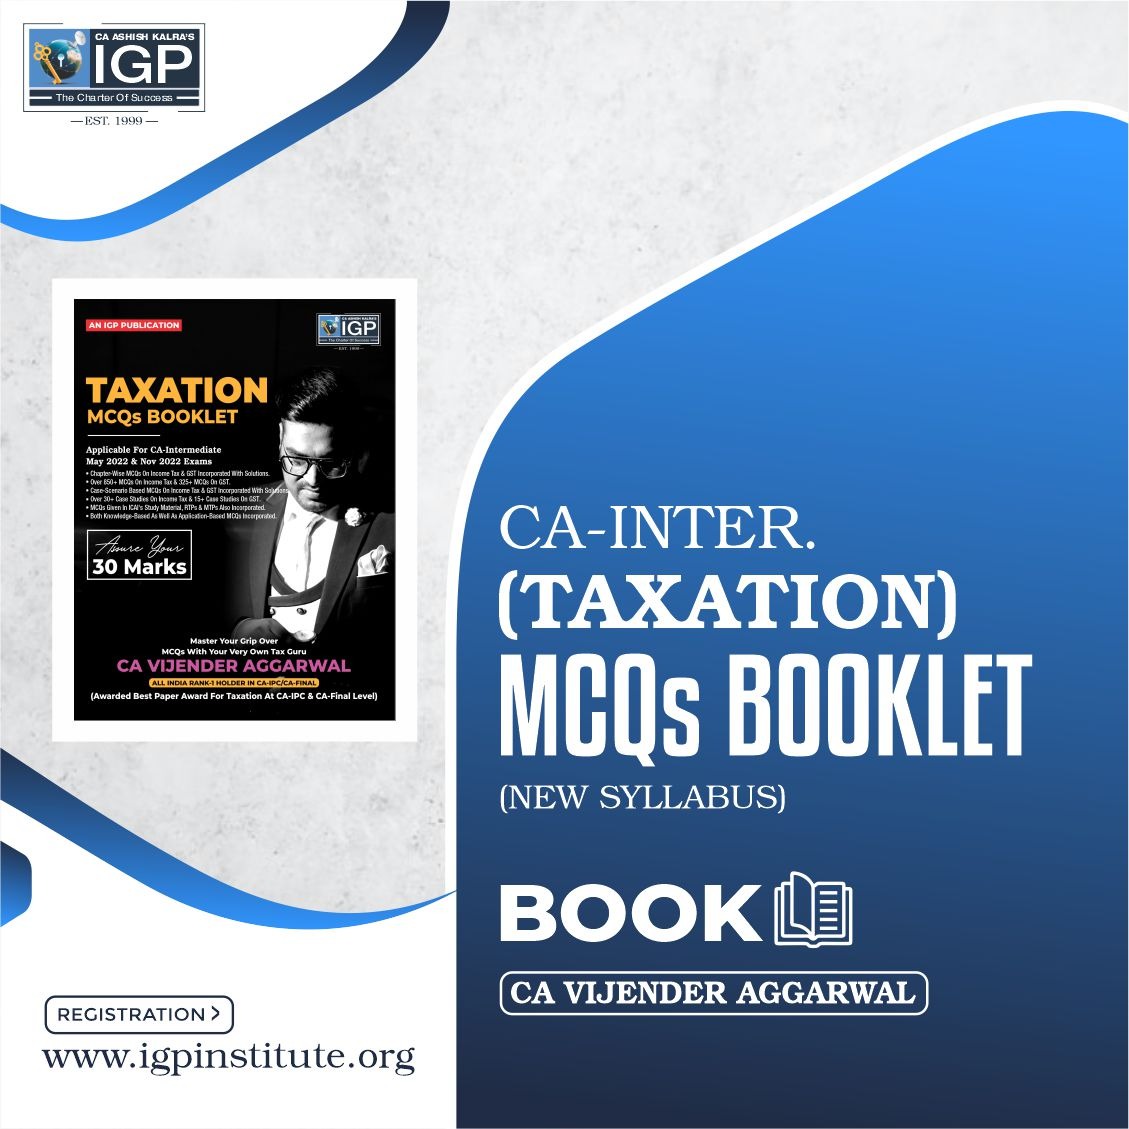 CA -INTER- Taxation (Income Tax + GST)